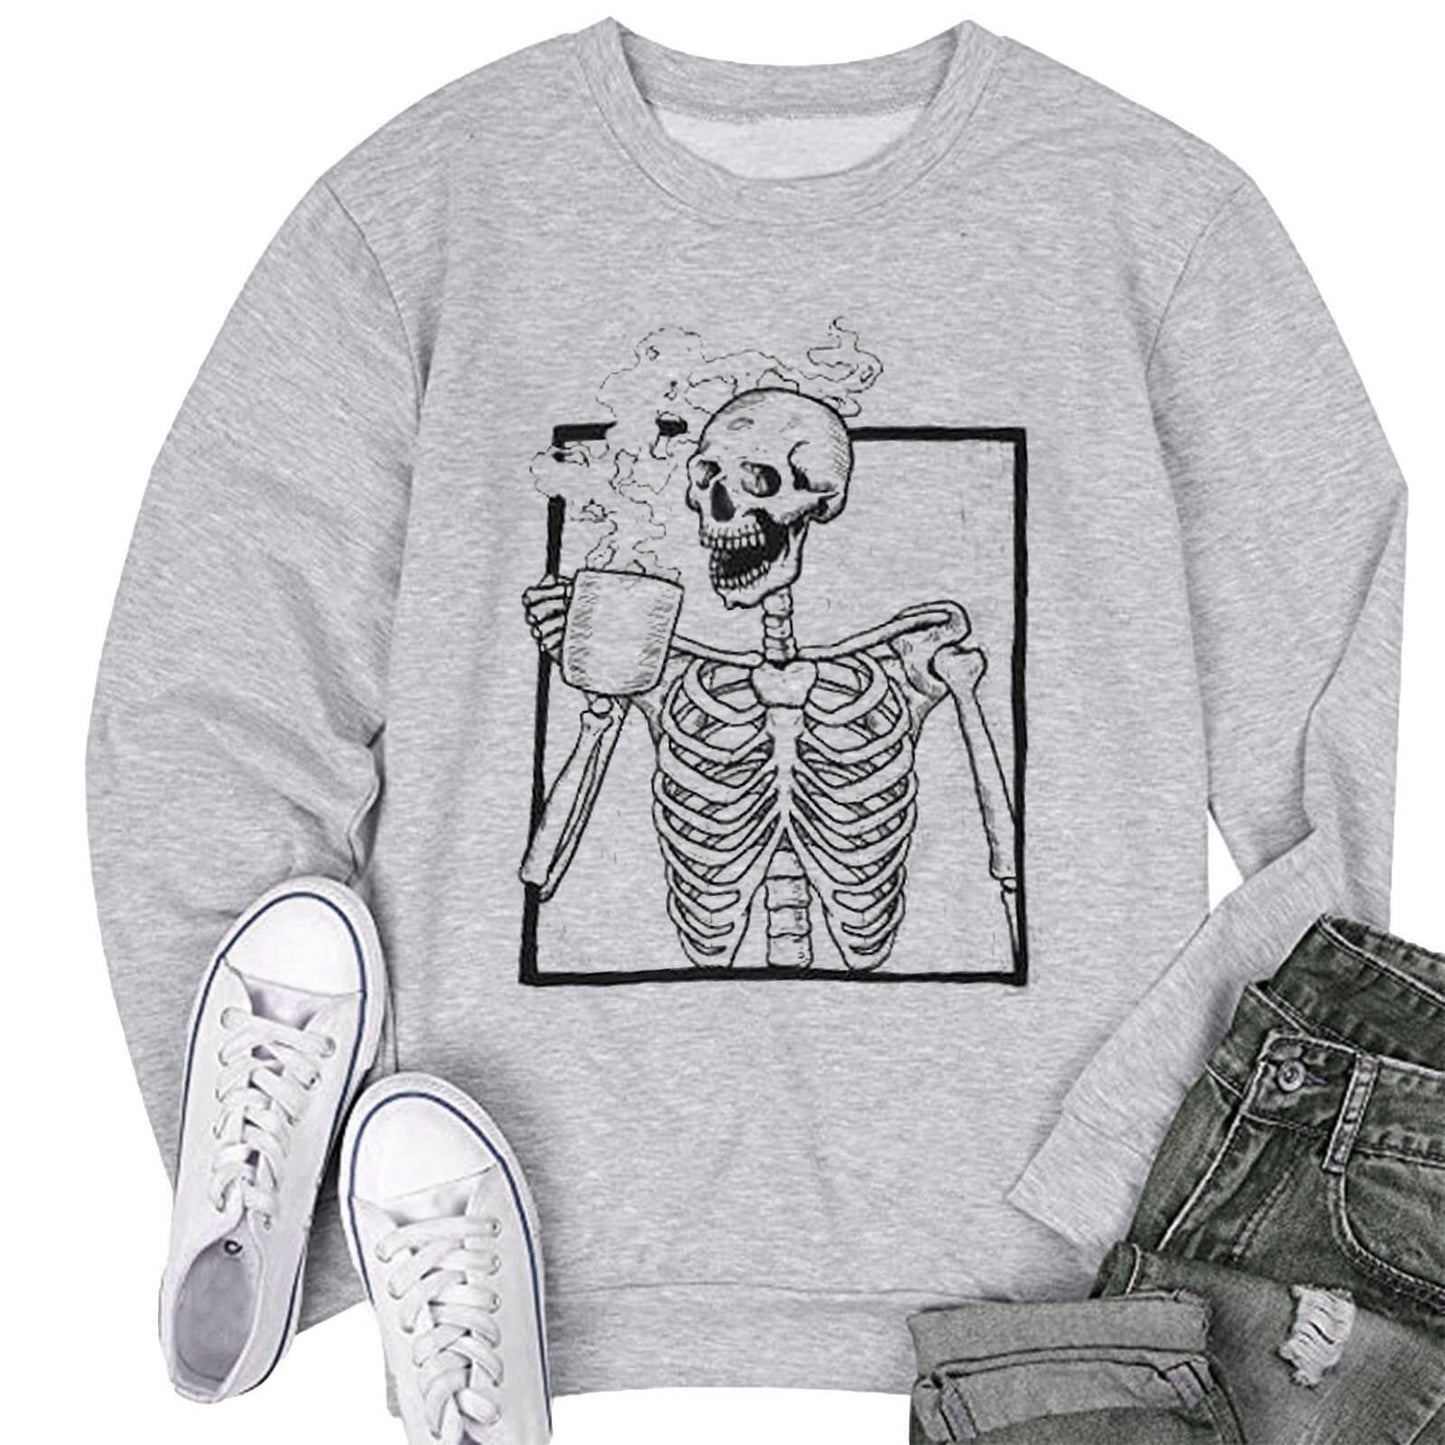 Skeleton Casual Sweatshirt